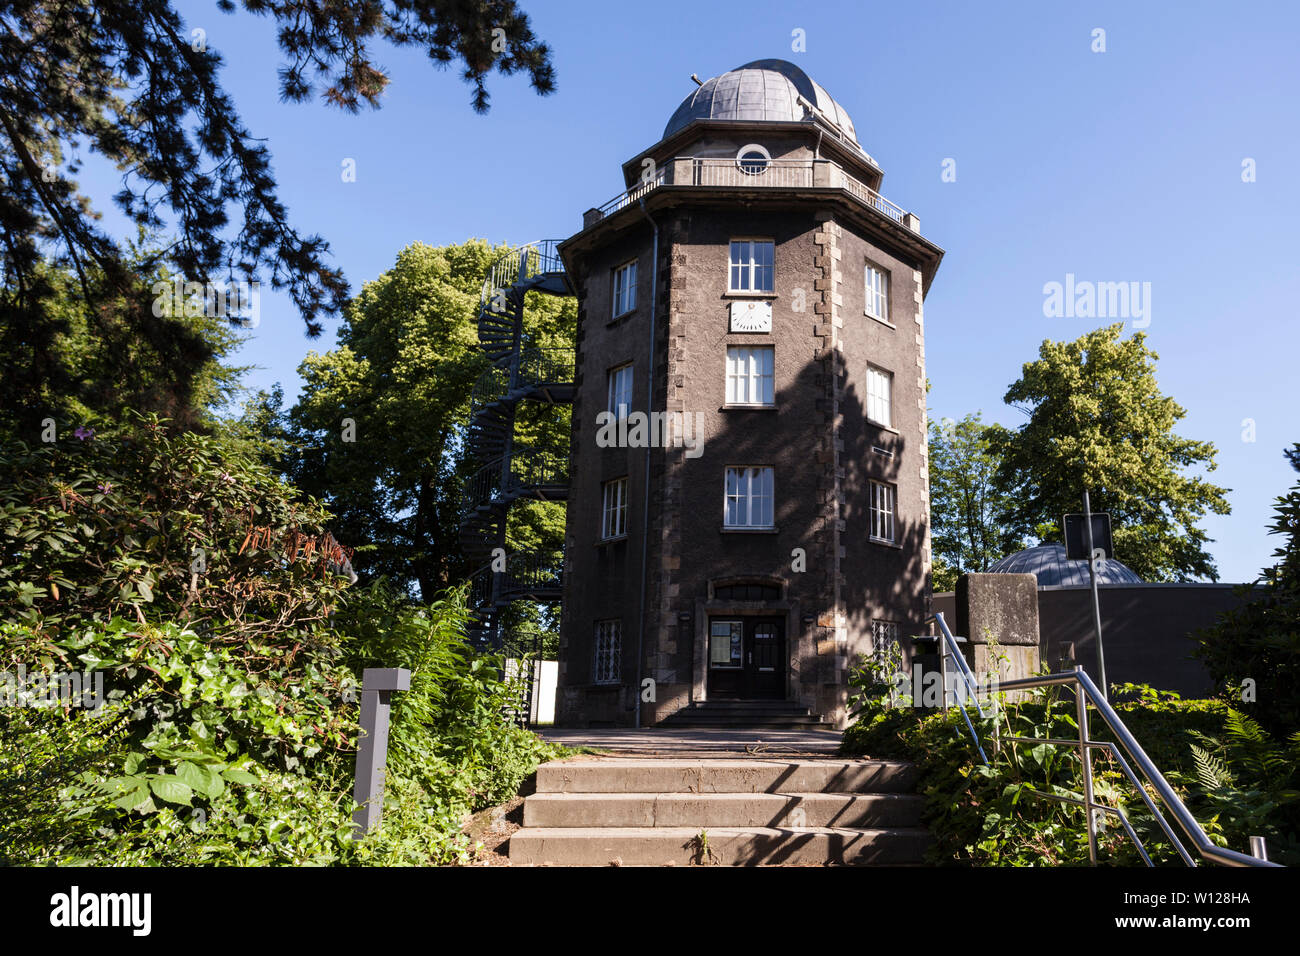 Westfalische Volkssternwarte - Westphalian public observatory in the city garden of Recklinghausen Stock Photo